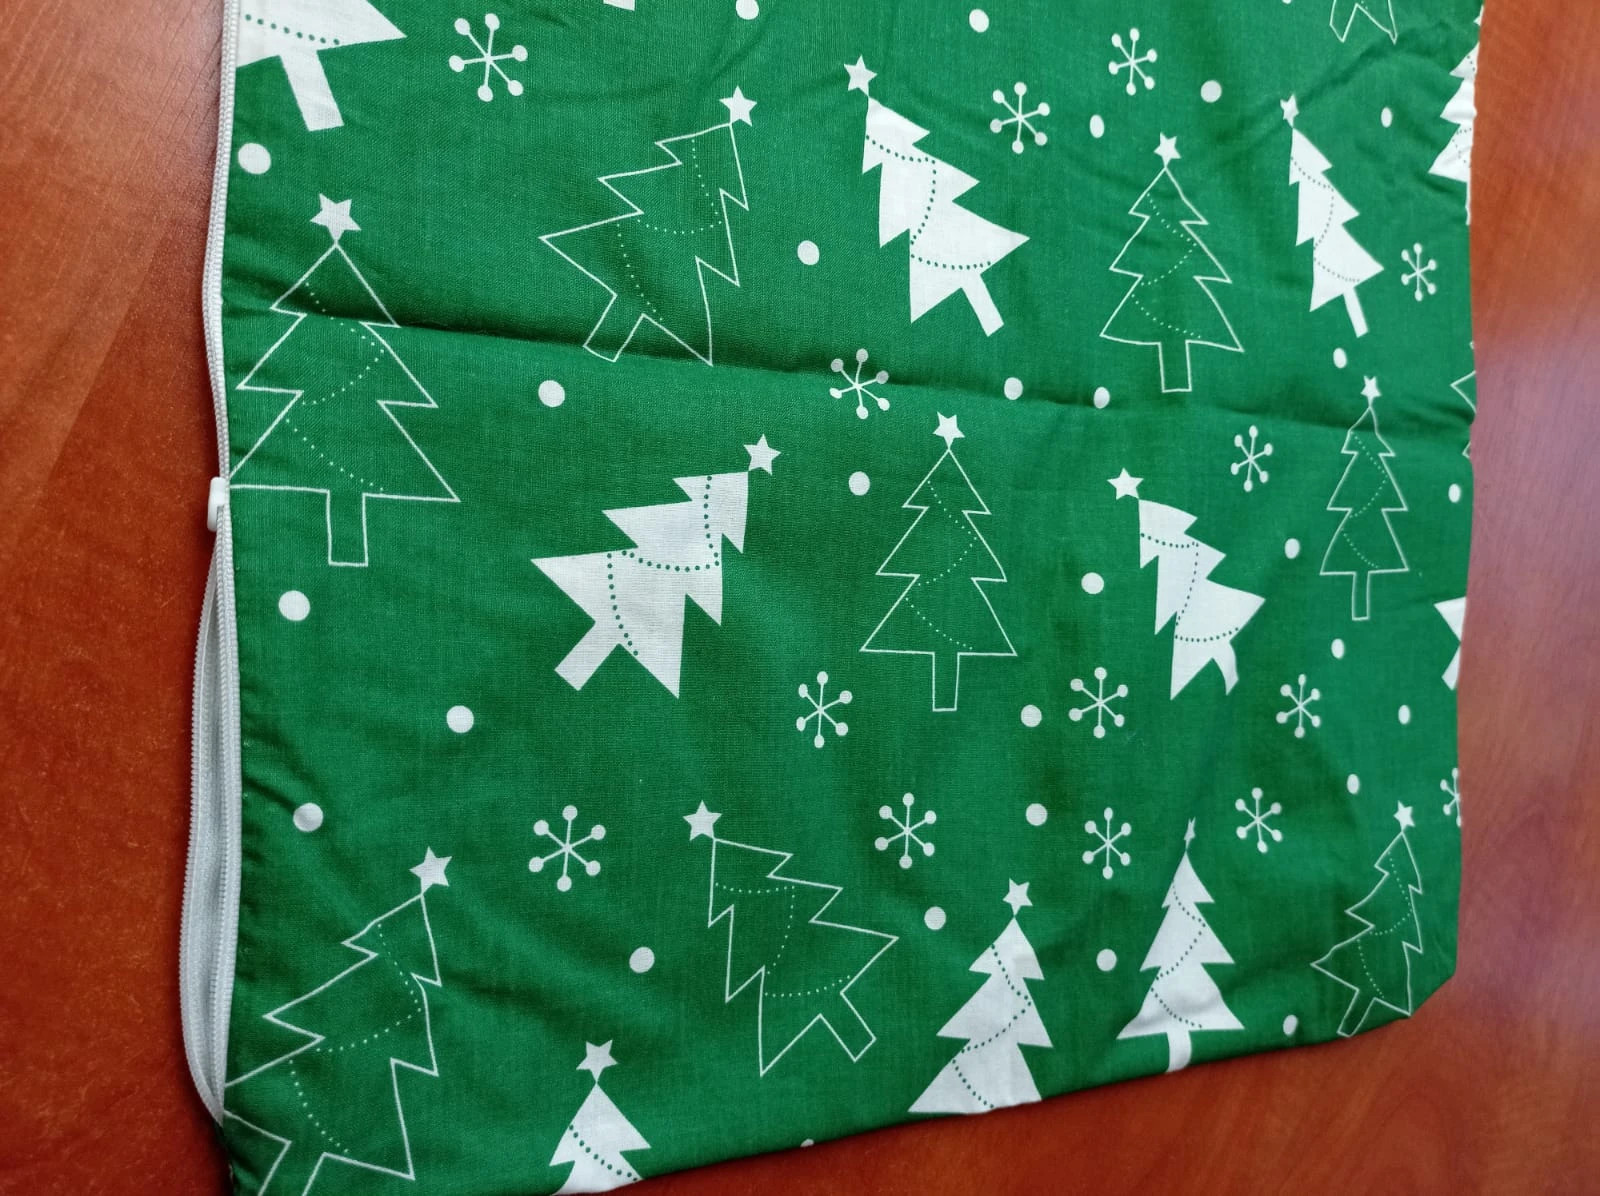 NOWA poszewka na poduszkę Jasiek świąteczna 40x40 zielona choinki bawełna